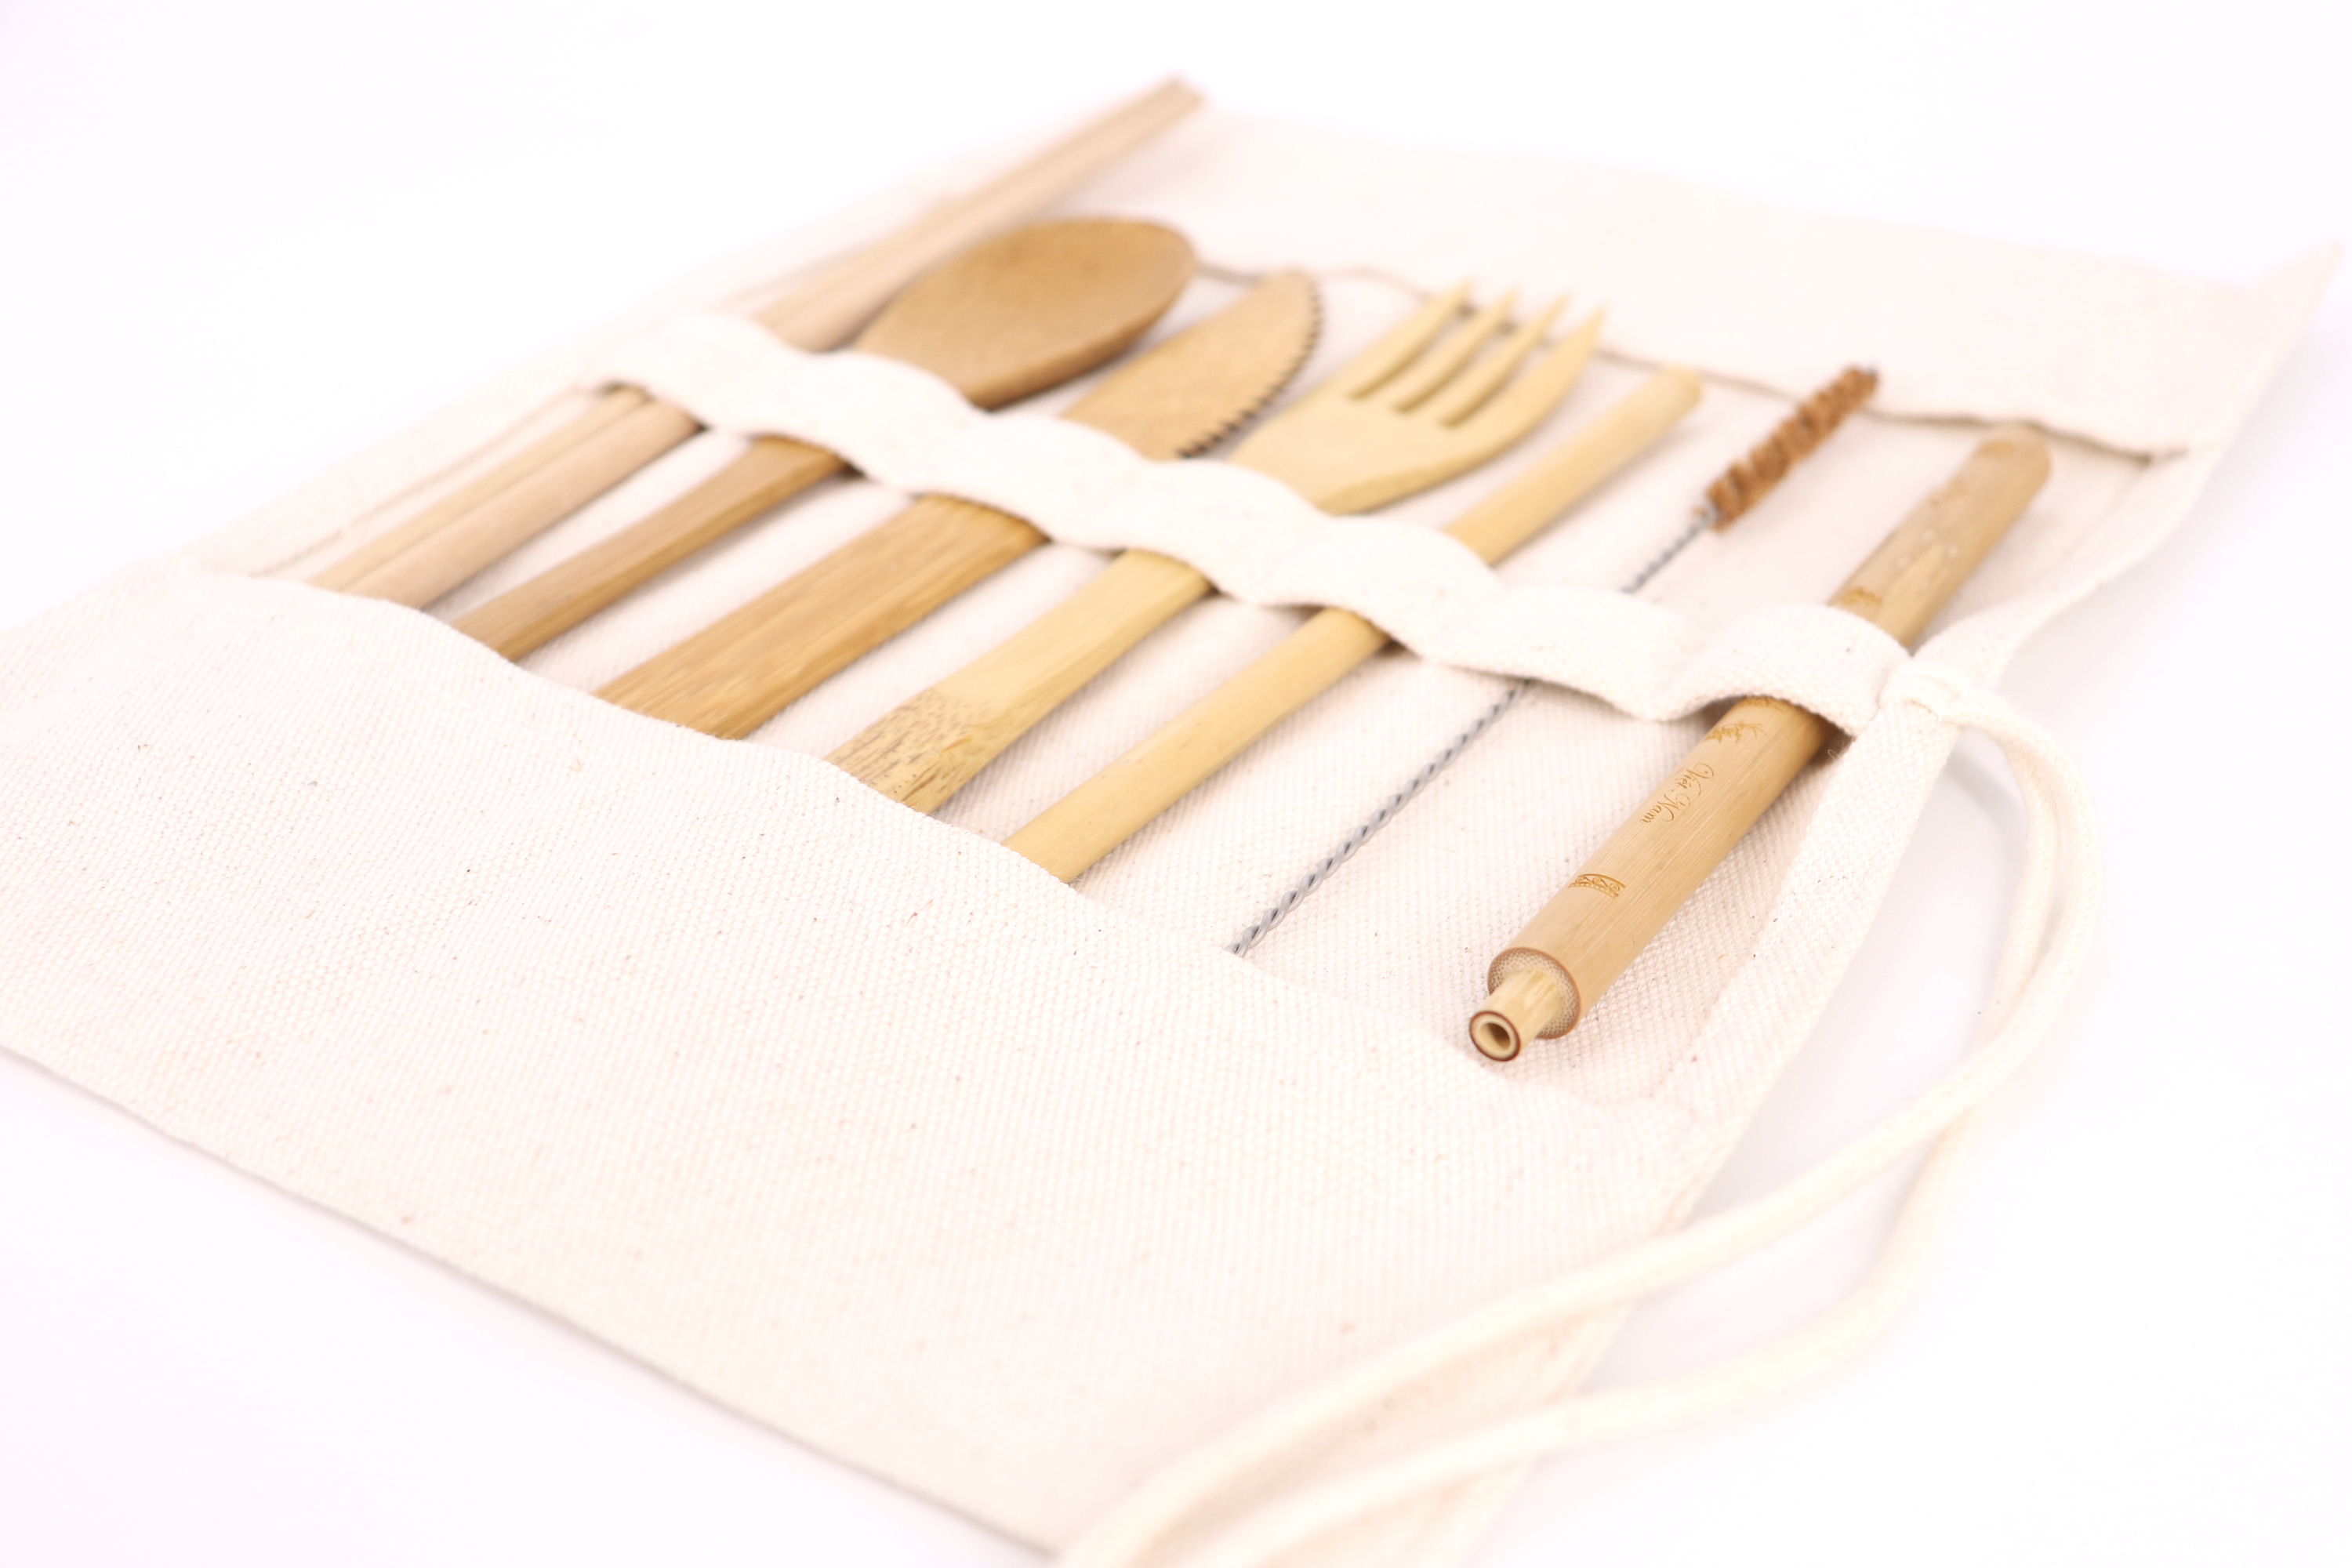 Bộ dụng cụ cá nhân 7 món bằng tre gồm Đũa, muỗng, dao, nĩa, ống hút, mang du lịch, làm việc văn phòng.